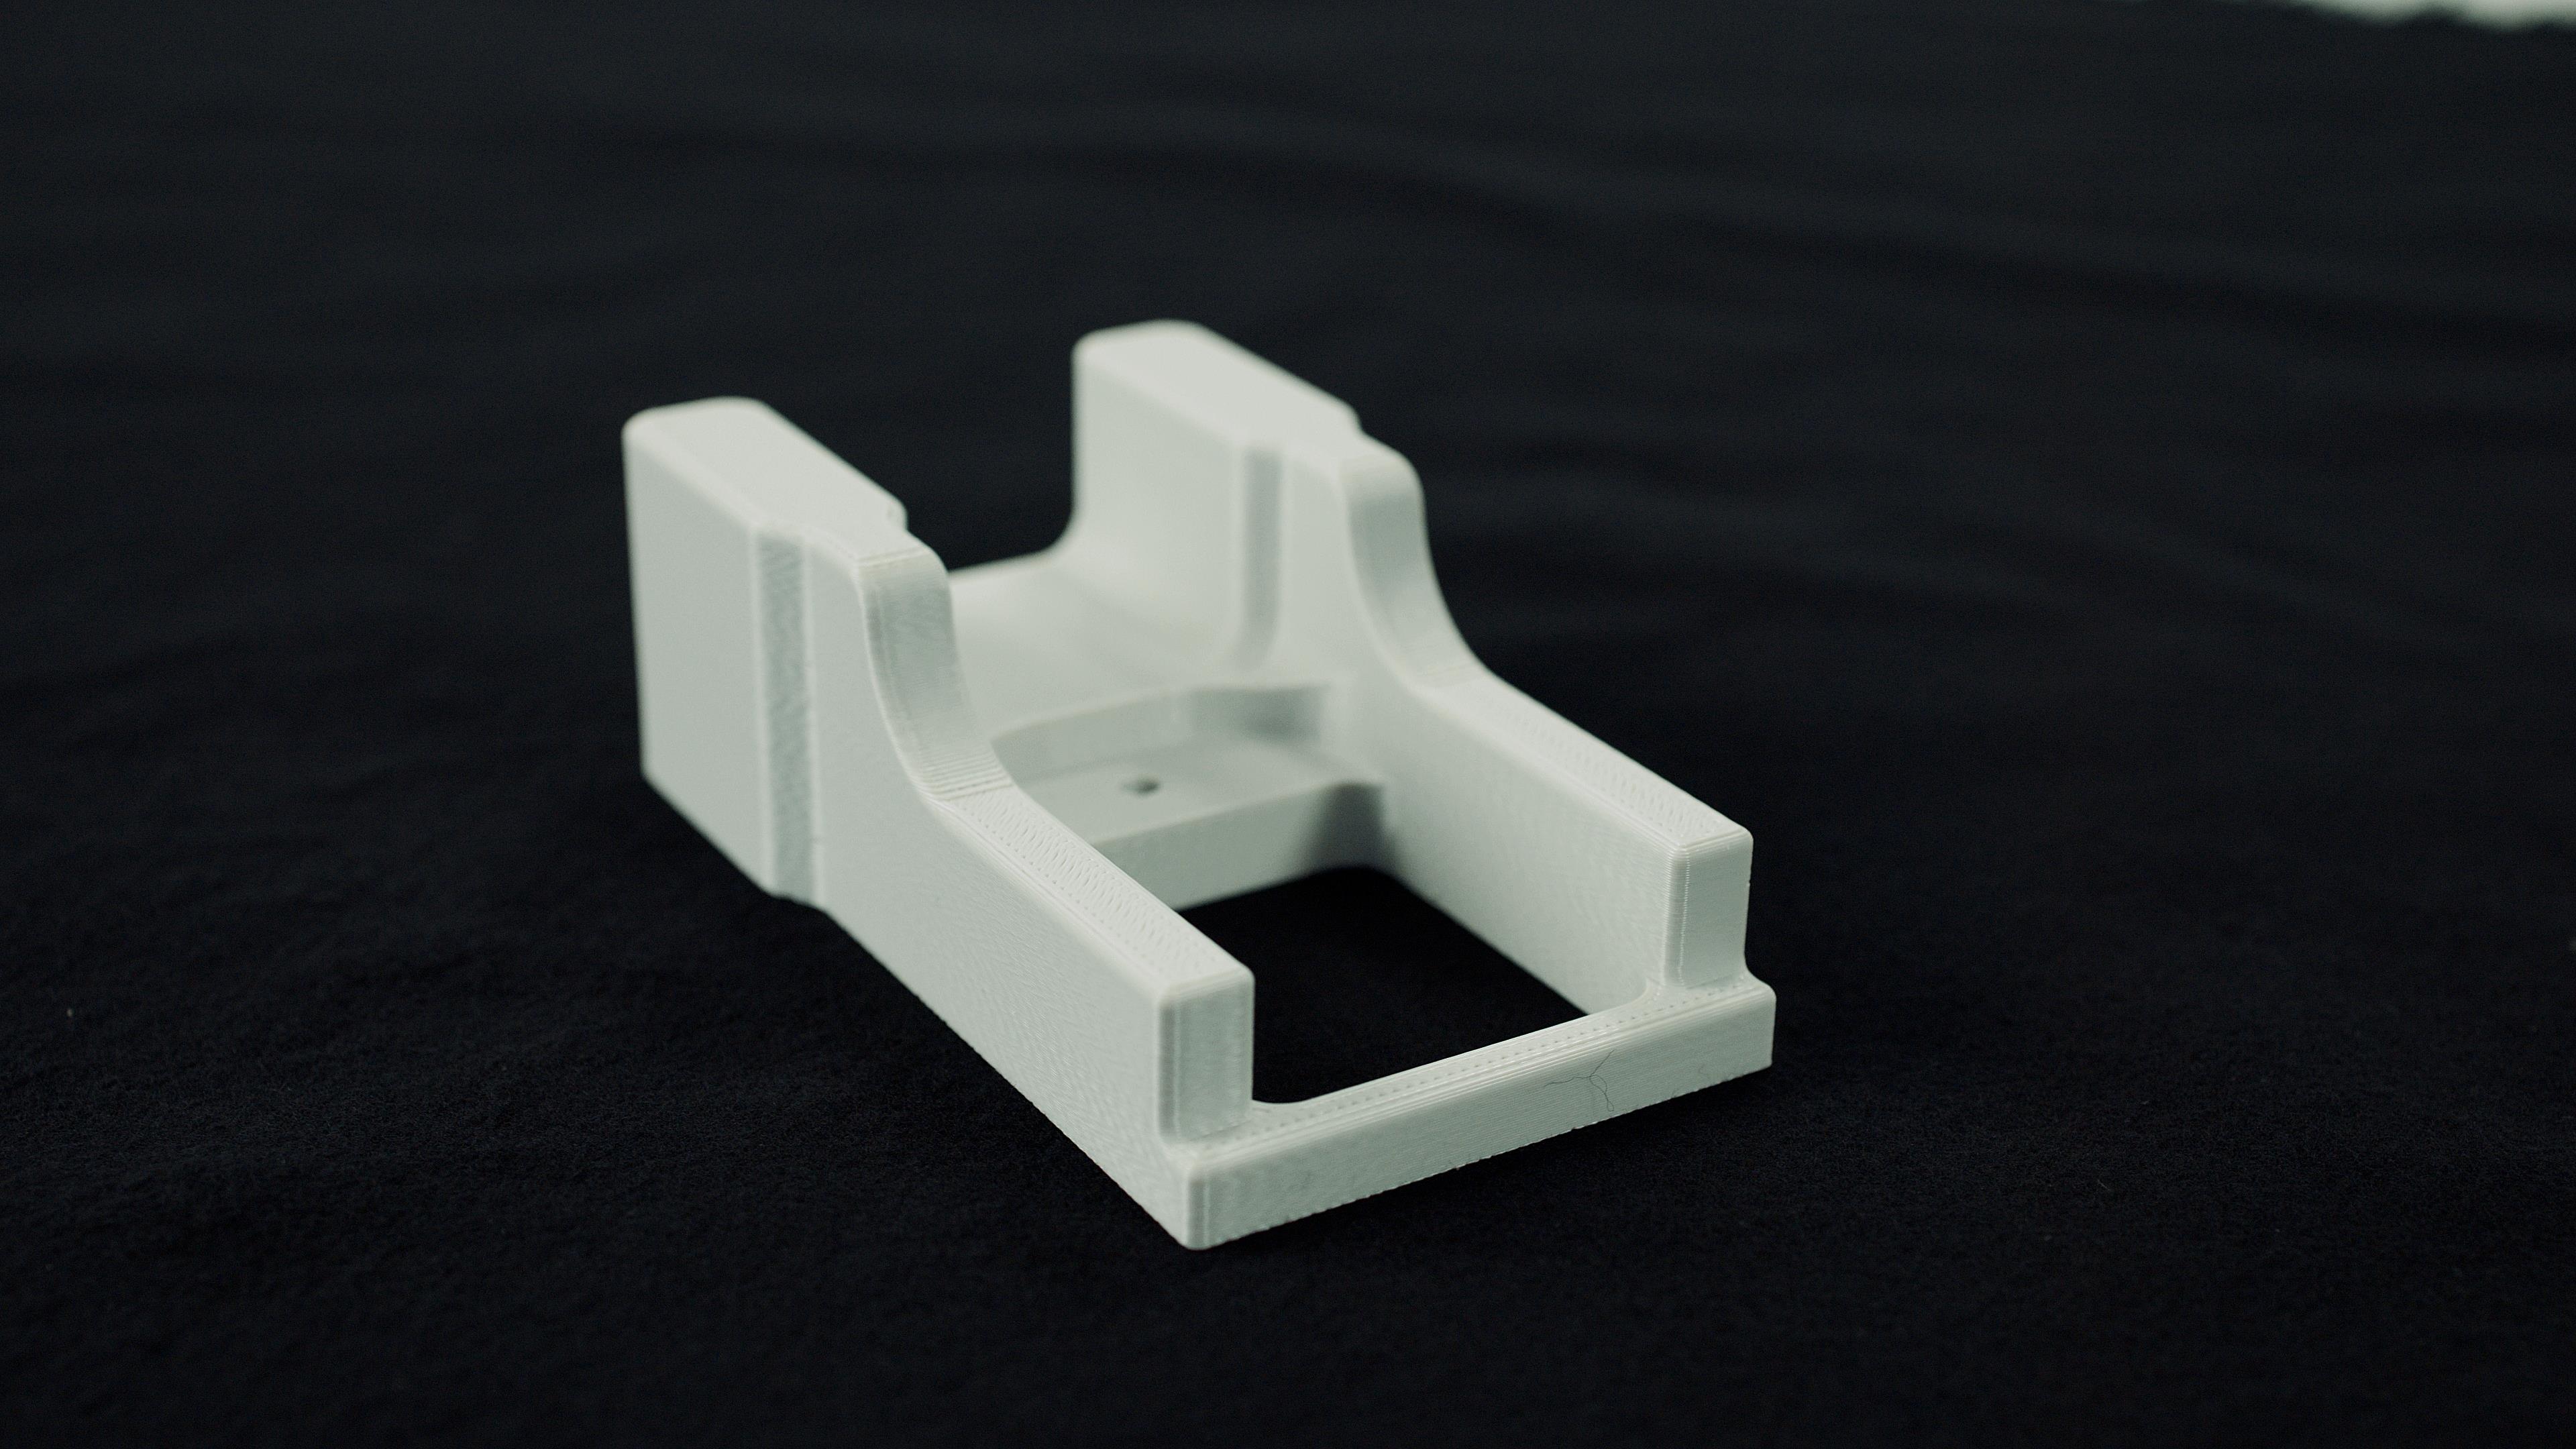 Kimya PC-FR 3D Printing Material